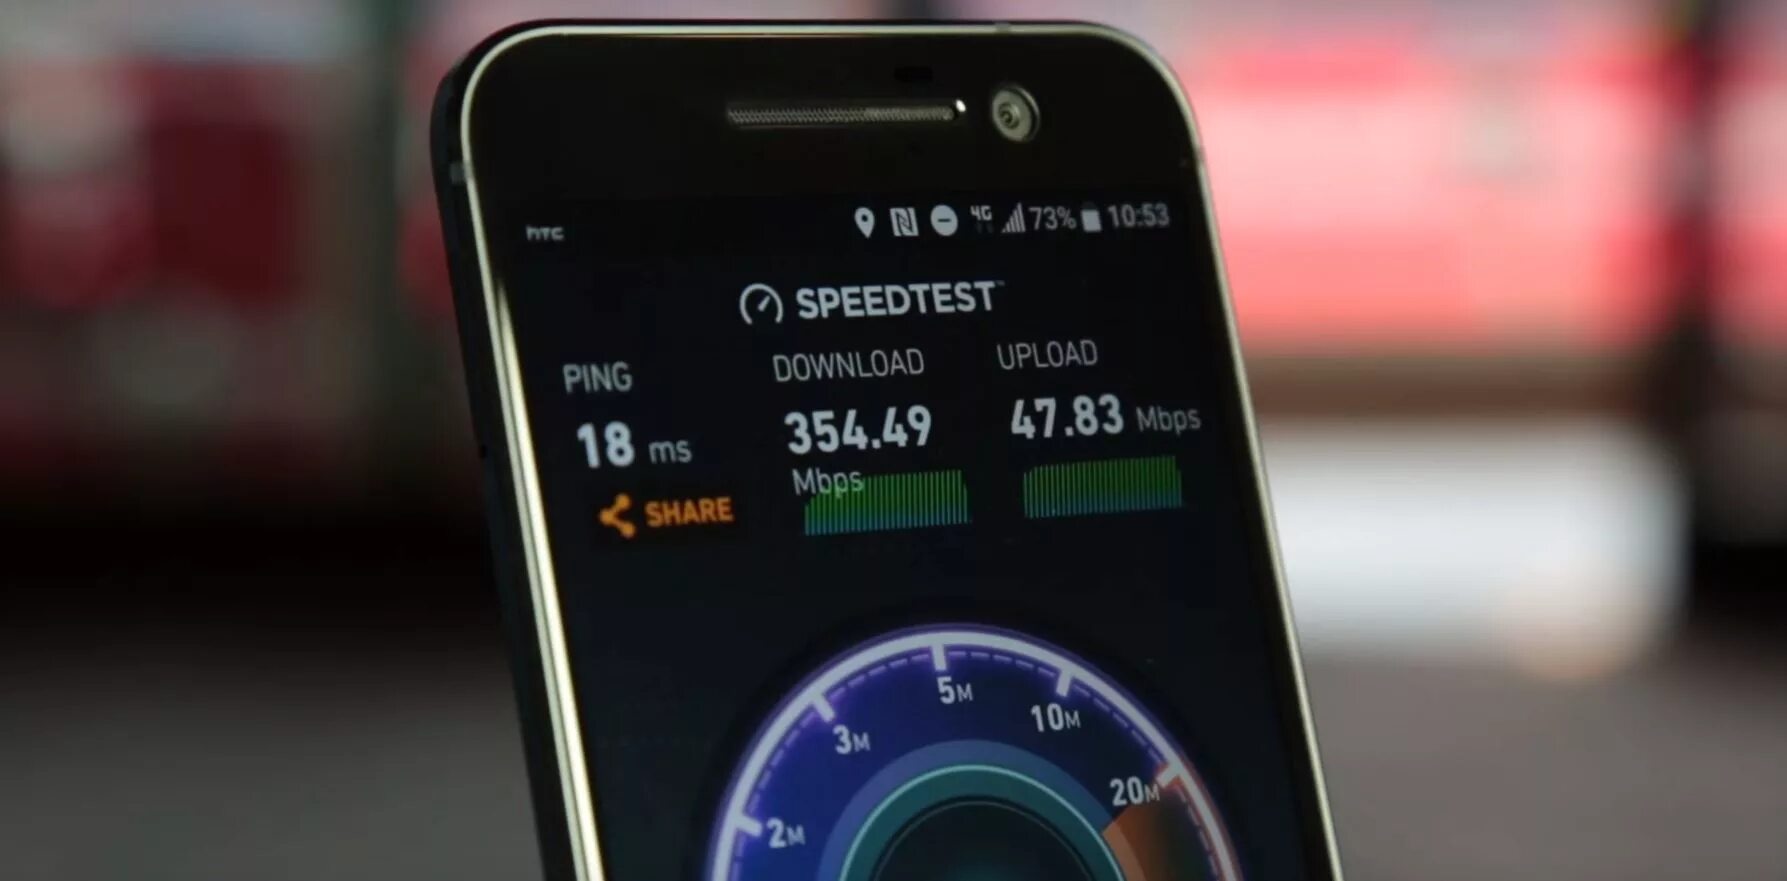 Mobile 4g/5g модем. Скоростной мобильный интернет. Режим 4g+. Частный дом Speedtest. Хороший интернет 4g